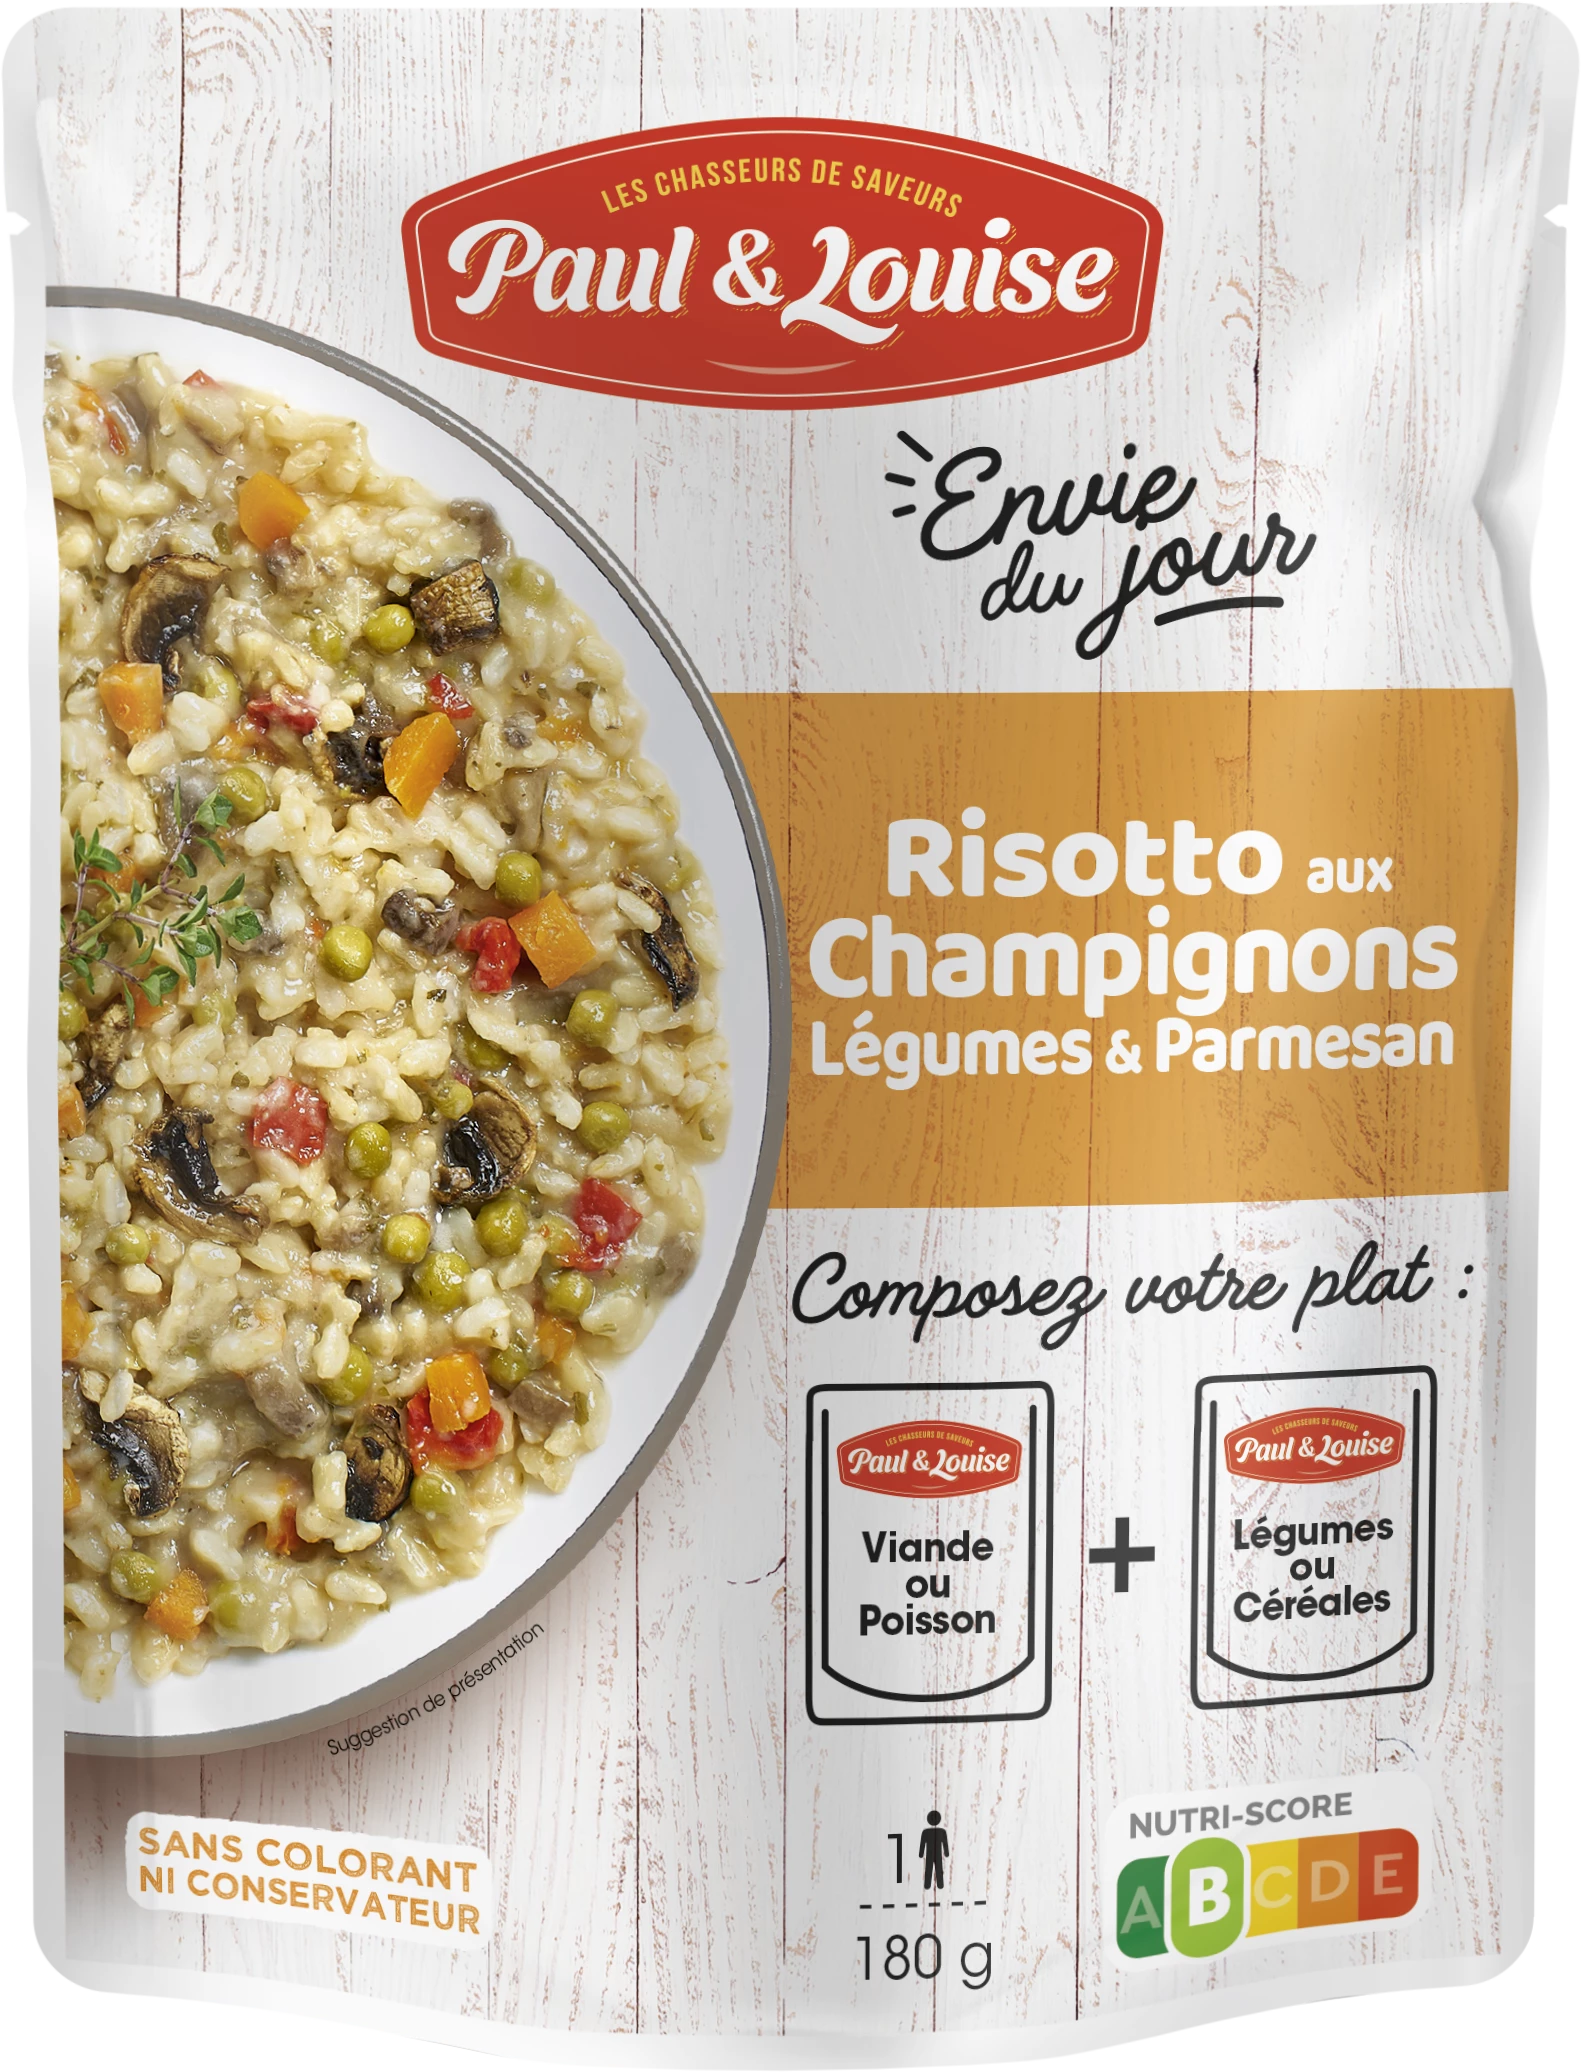 Risotto aux Champignons Légumes & Parmesan, 180g - PAUL&LOUISE